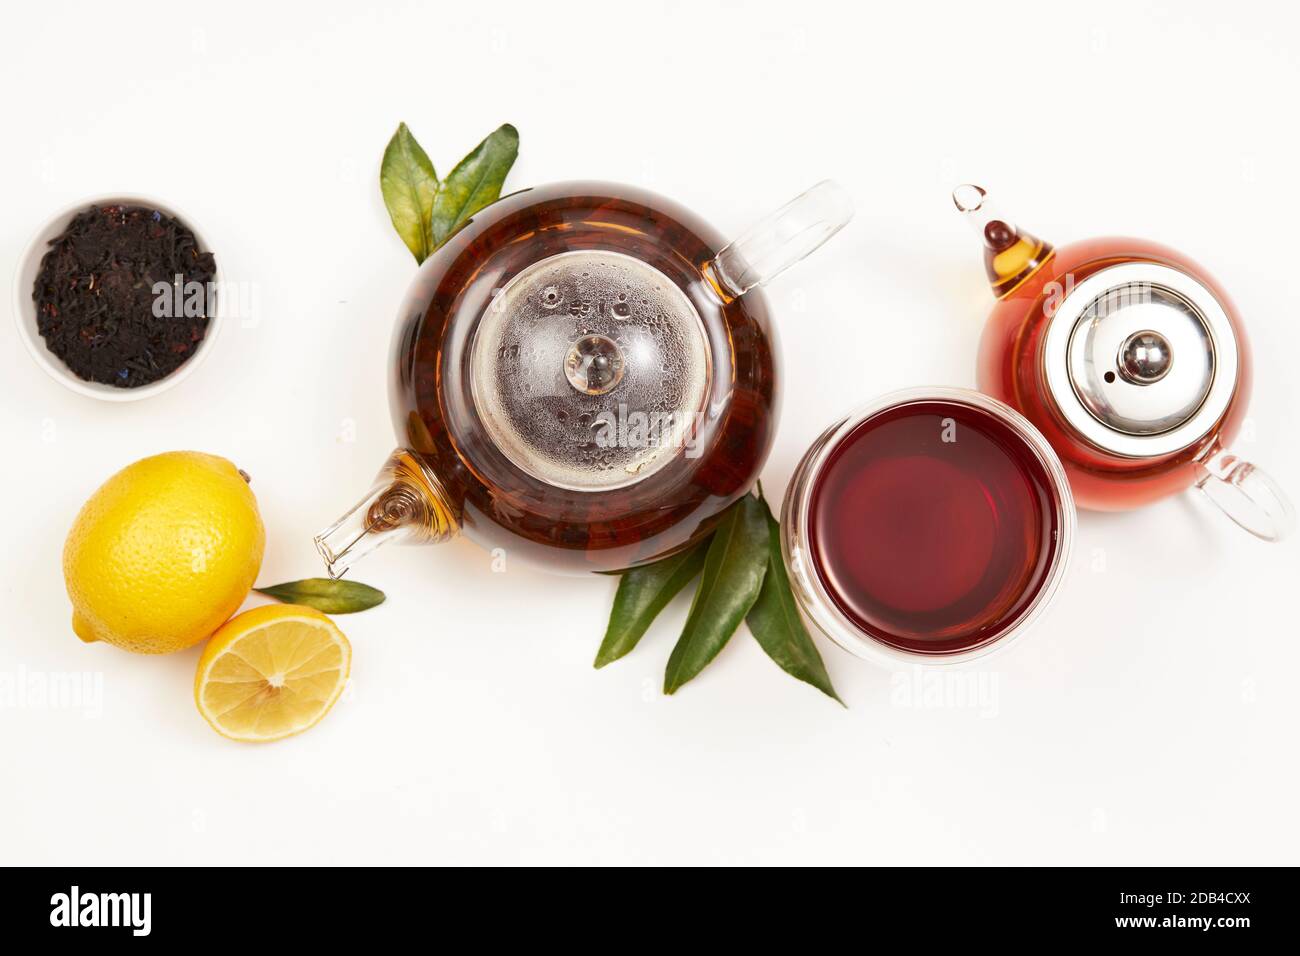 Concetto di tè, teapot e tazza di tè con foglie verdi, limone, vista dall'alto Foto Stock